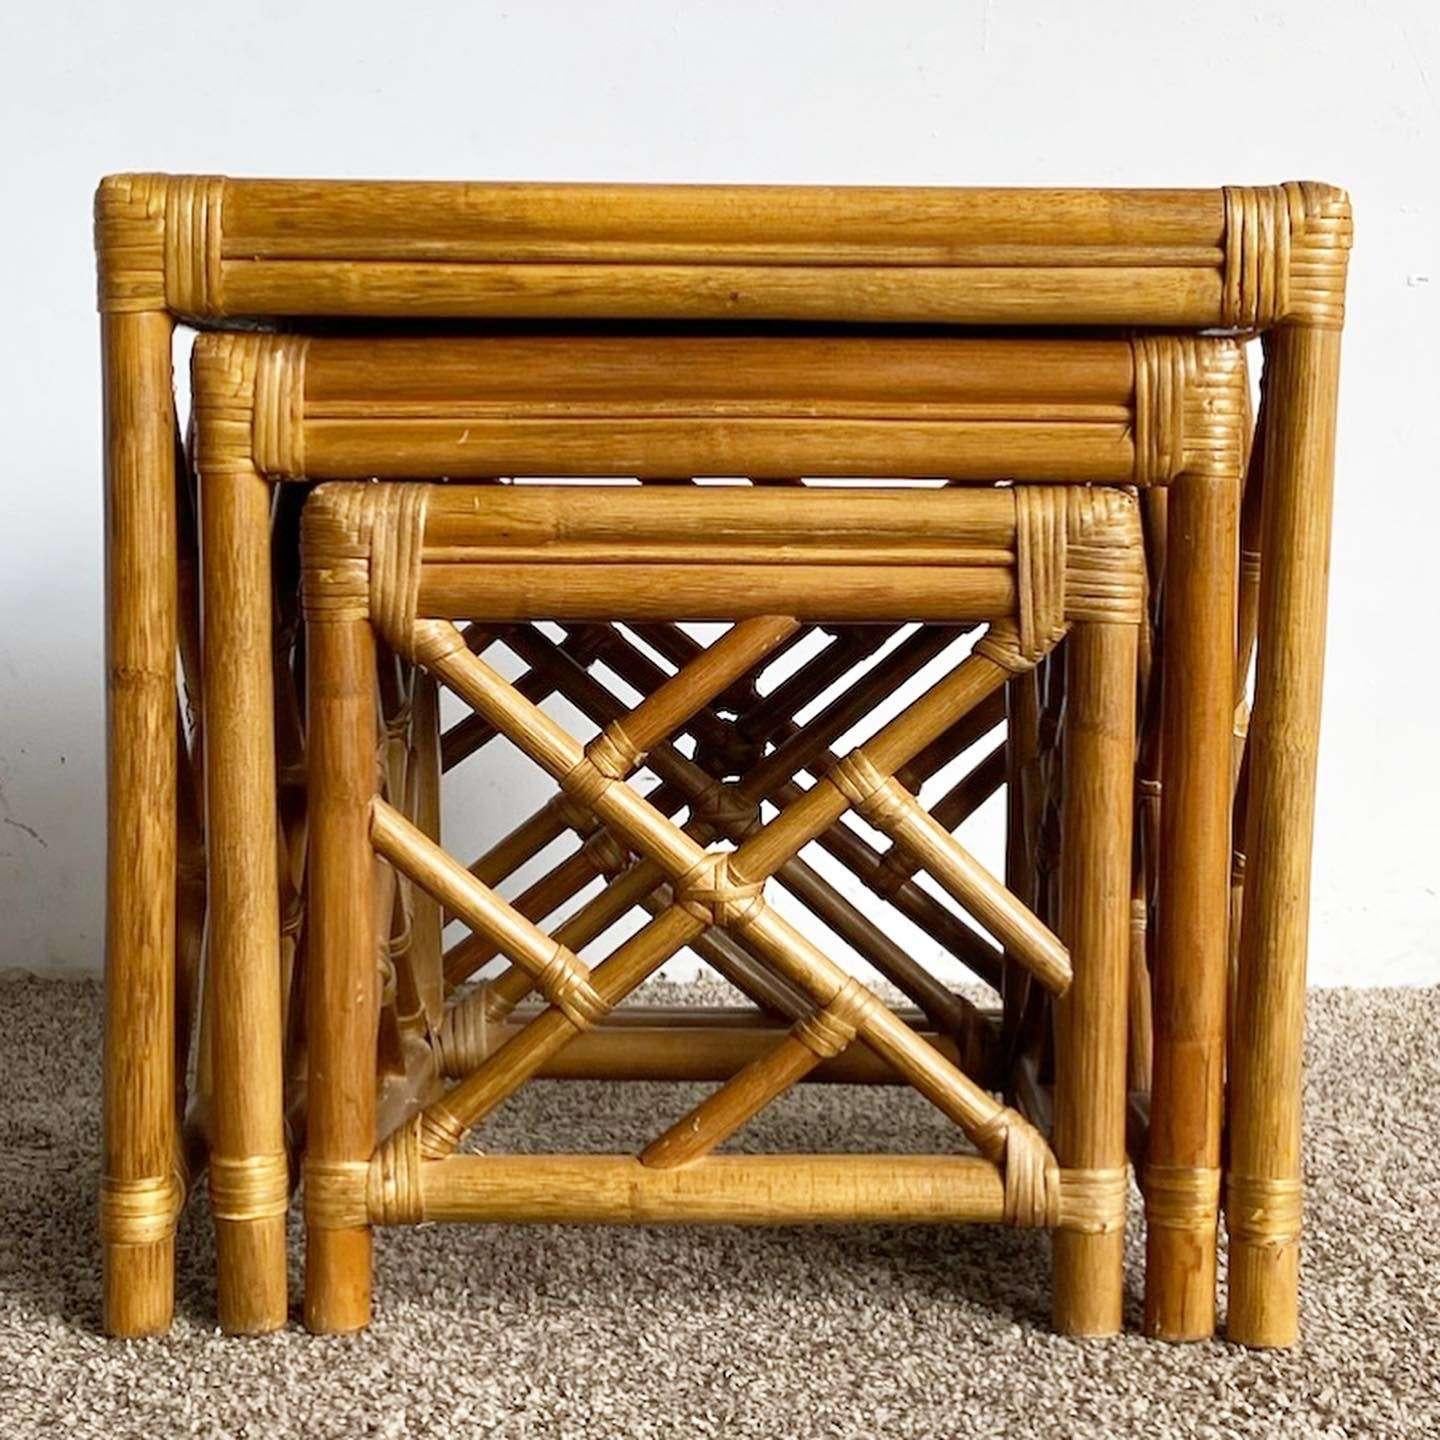 Erstaunlich Vintage Boho chic Chippendale Stil Verschachtelung Tabellen. Sie bestehen aus einer Bambuskonstruktion mit Rattangeflecht und Flechtaufsätzen.

Mittlerer Tisch misst 19 